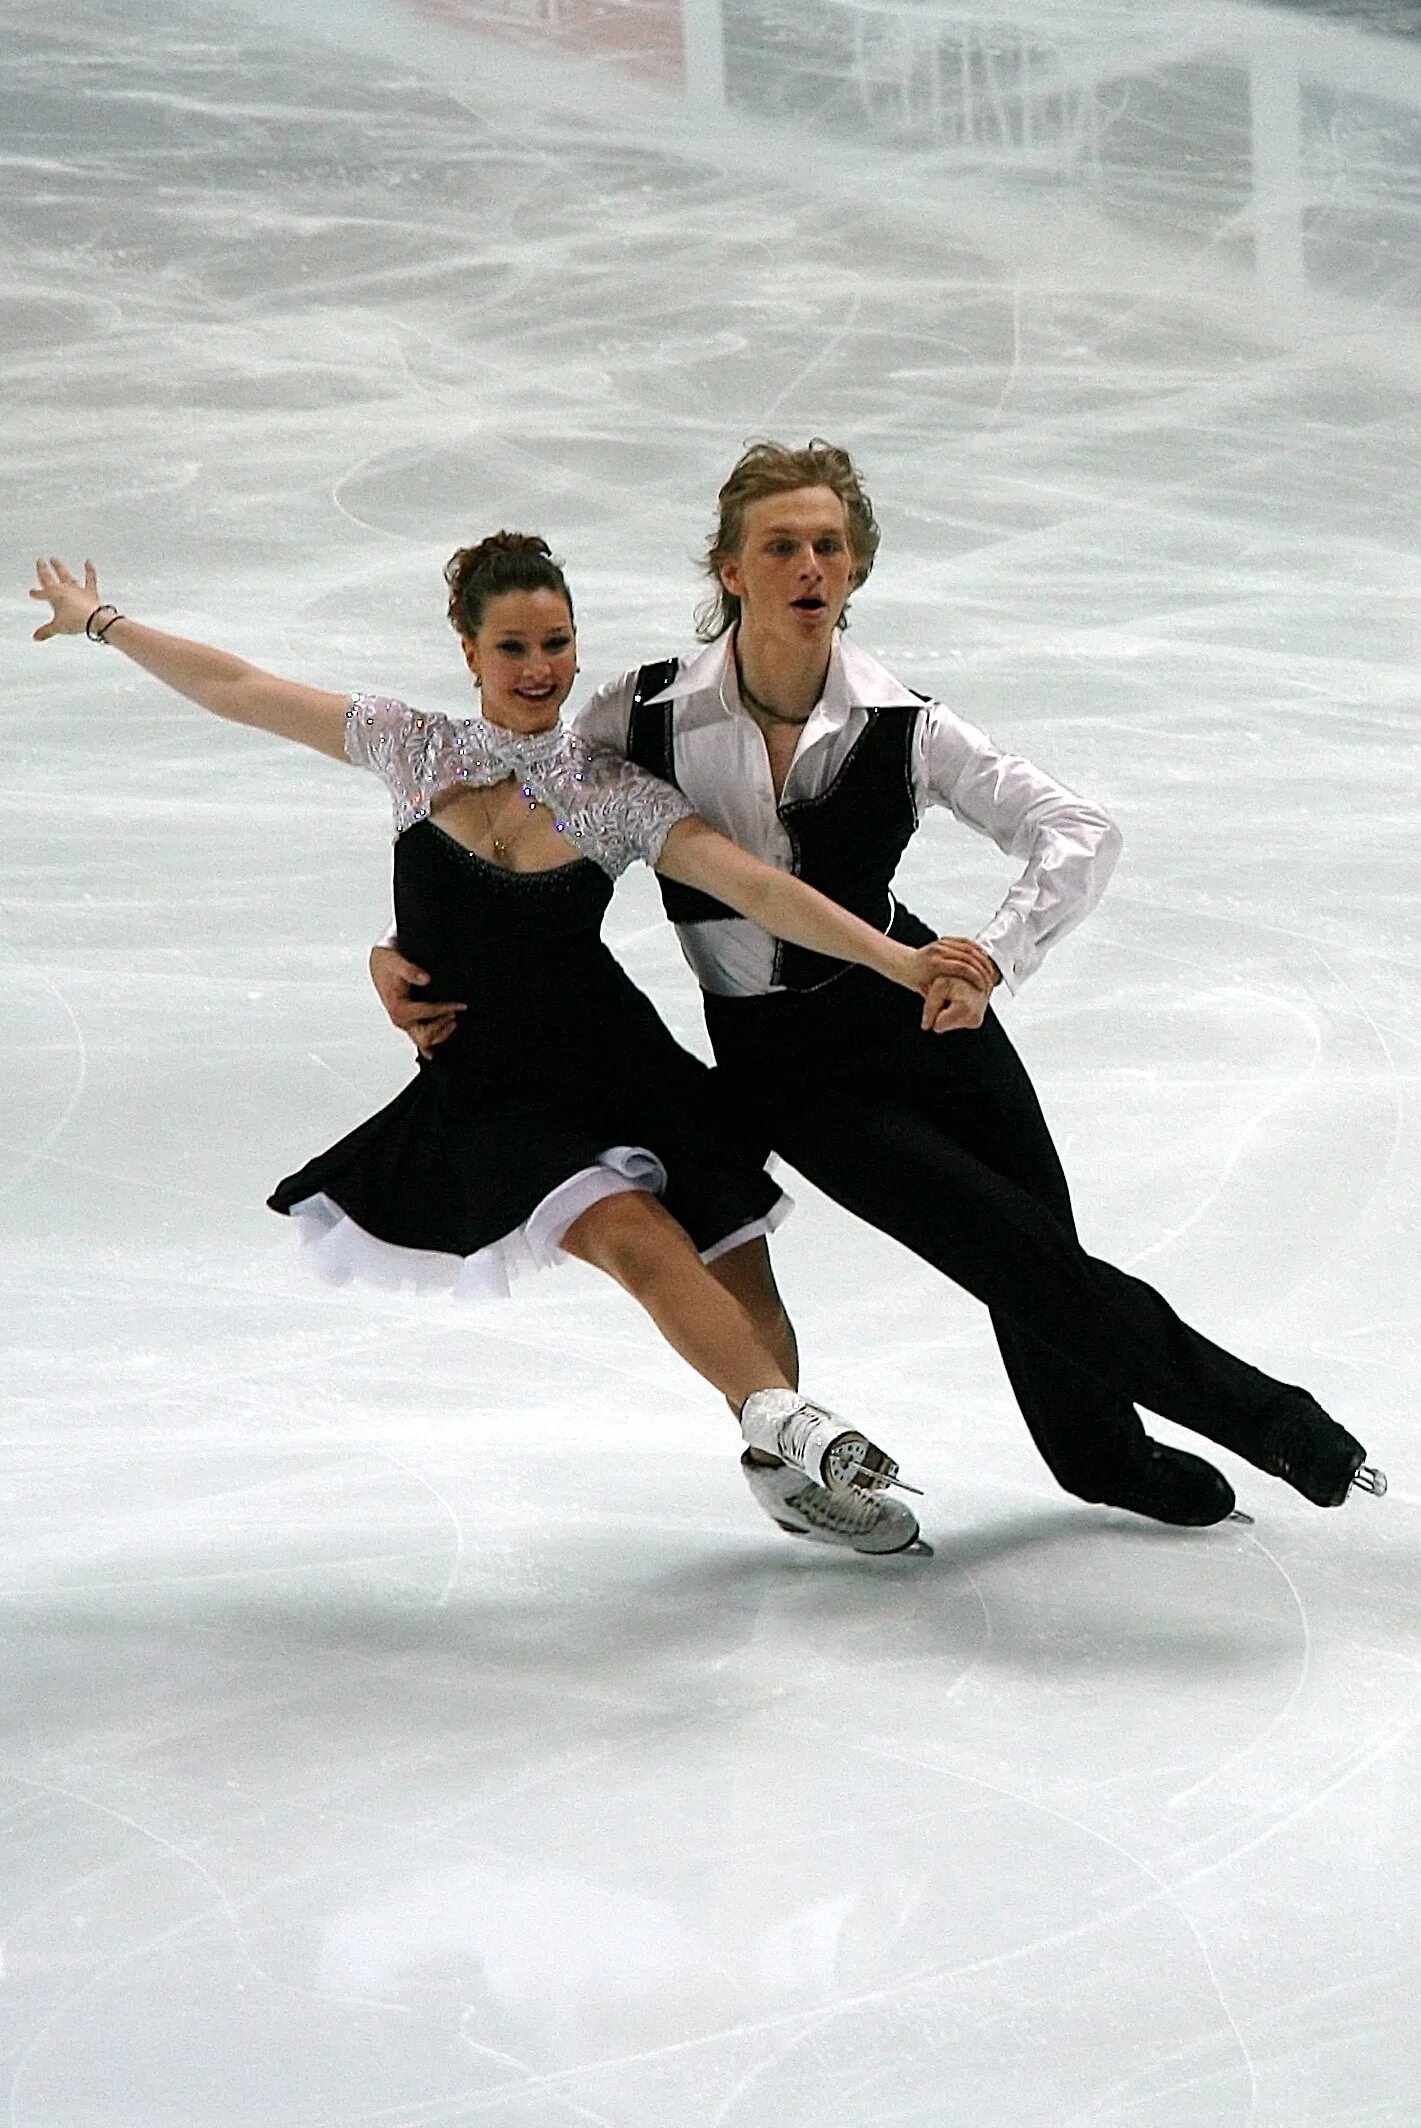 Ice skating sport. Фигуристы на льду. Фигурное катание на коньках.